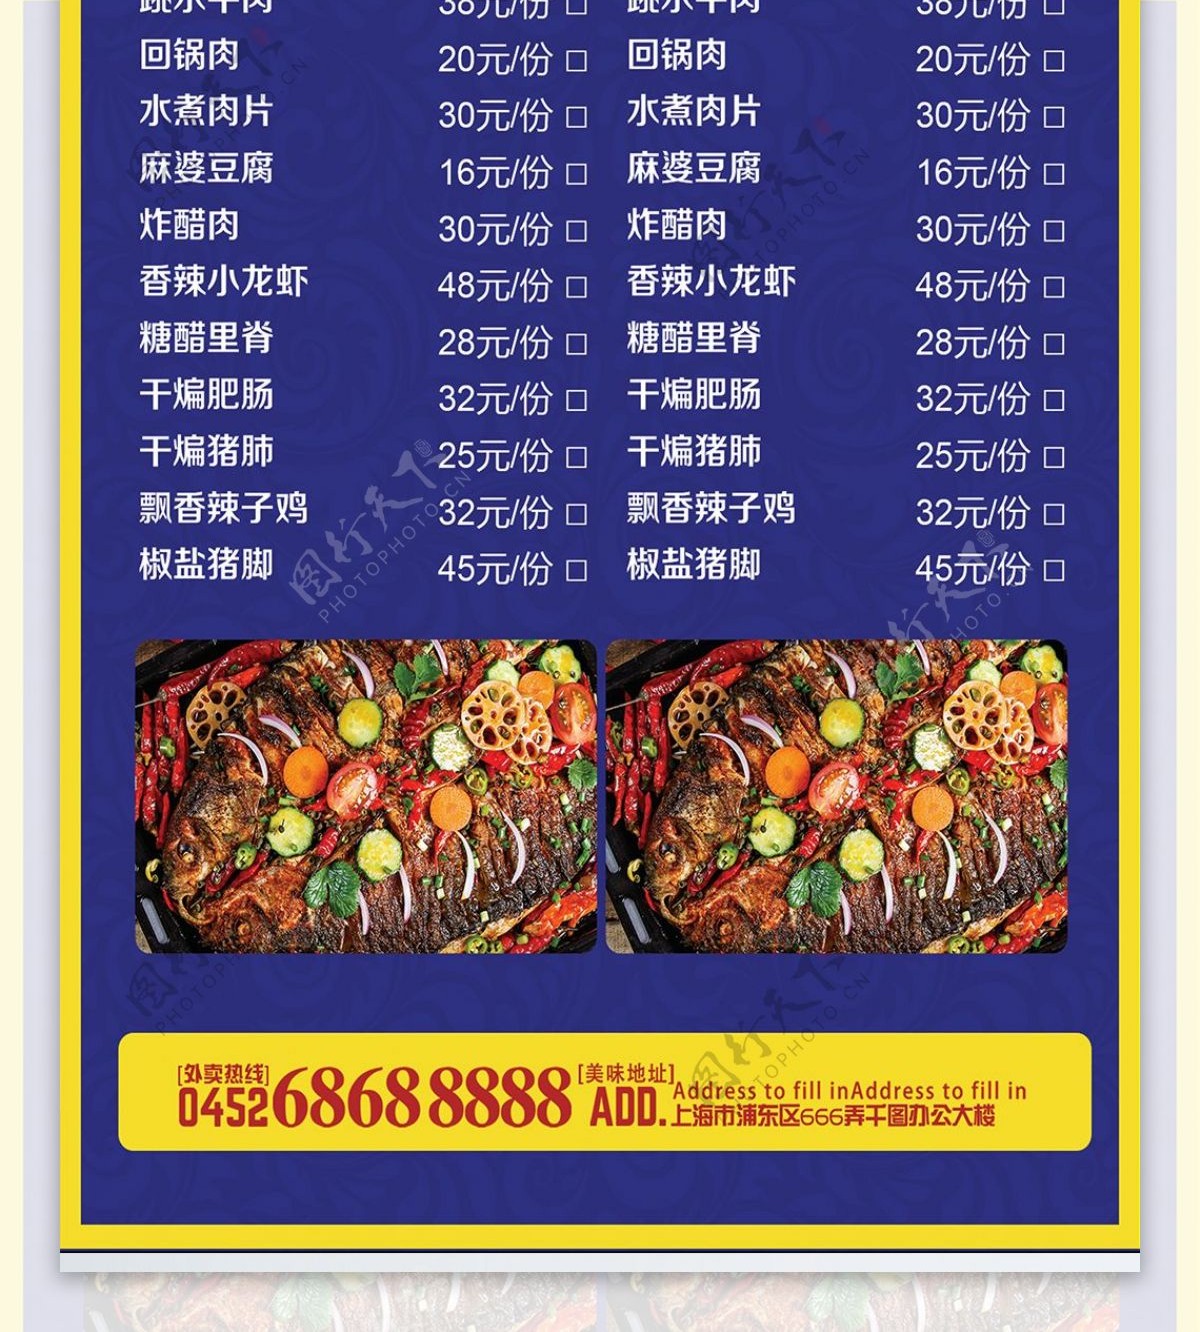 特色烤鱼店菜单促销单张宣传单模板